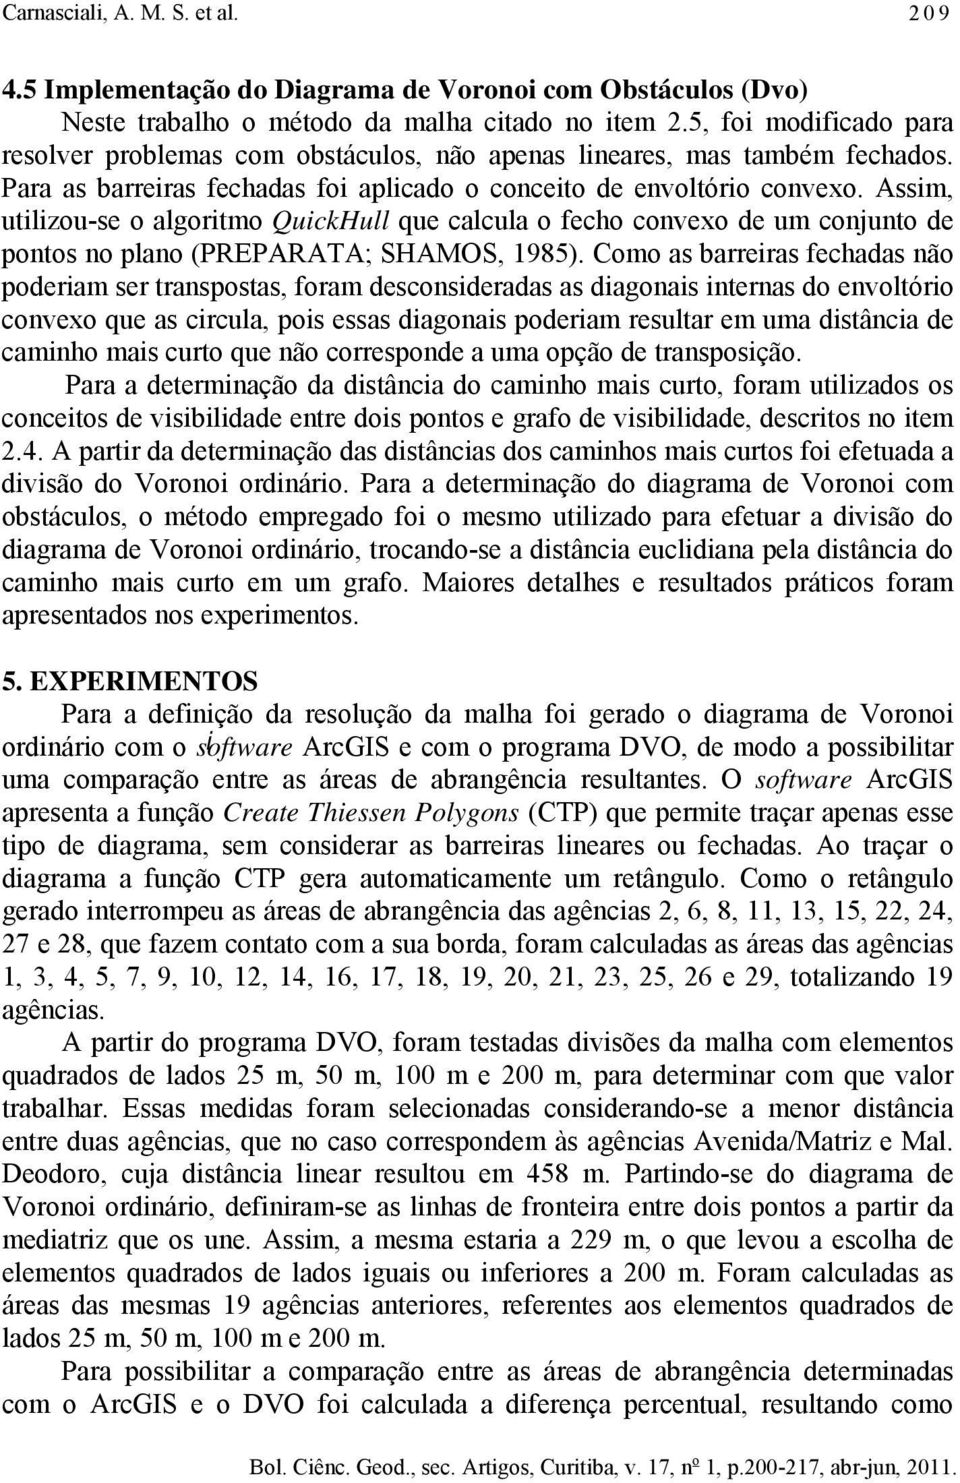 Assm, utlzou-se o algortmo QuckHull que calcula o fecho convexo de um conunto de pontos no plano (PREPARATA; SHAMOS, 1985).